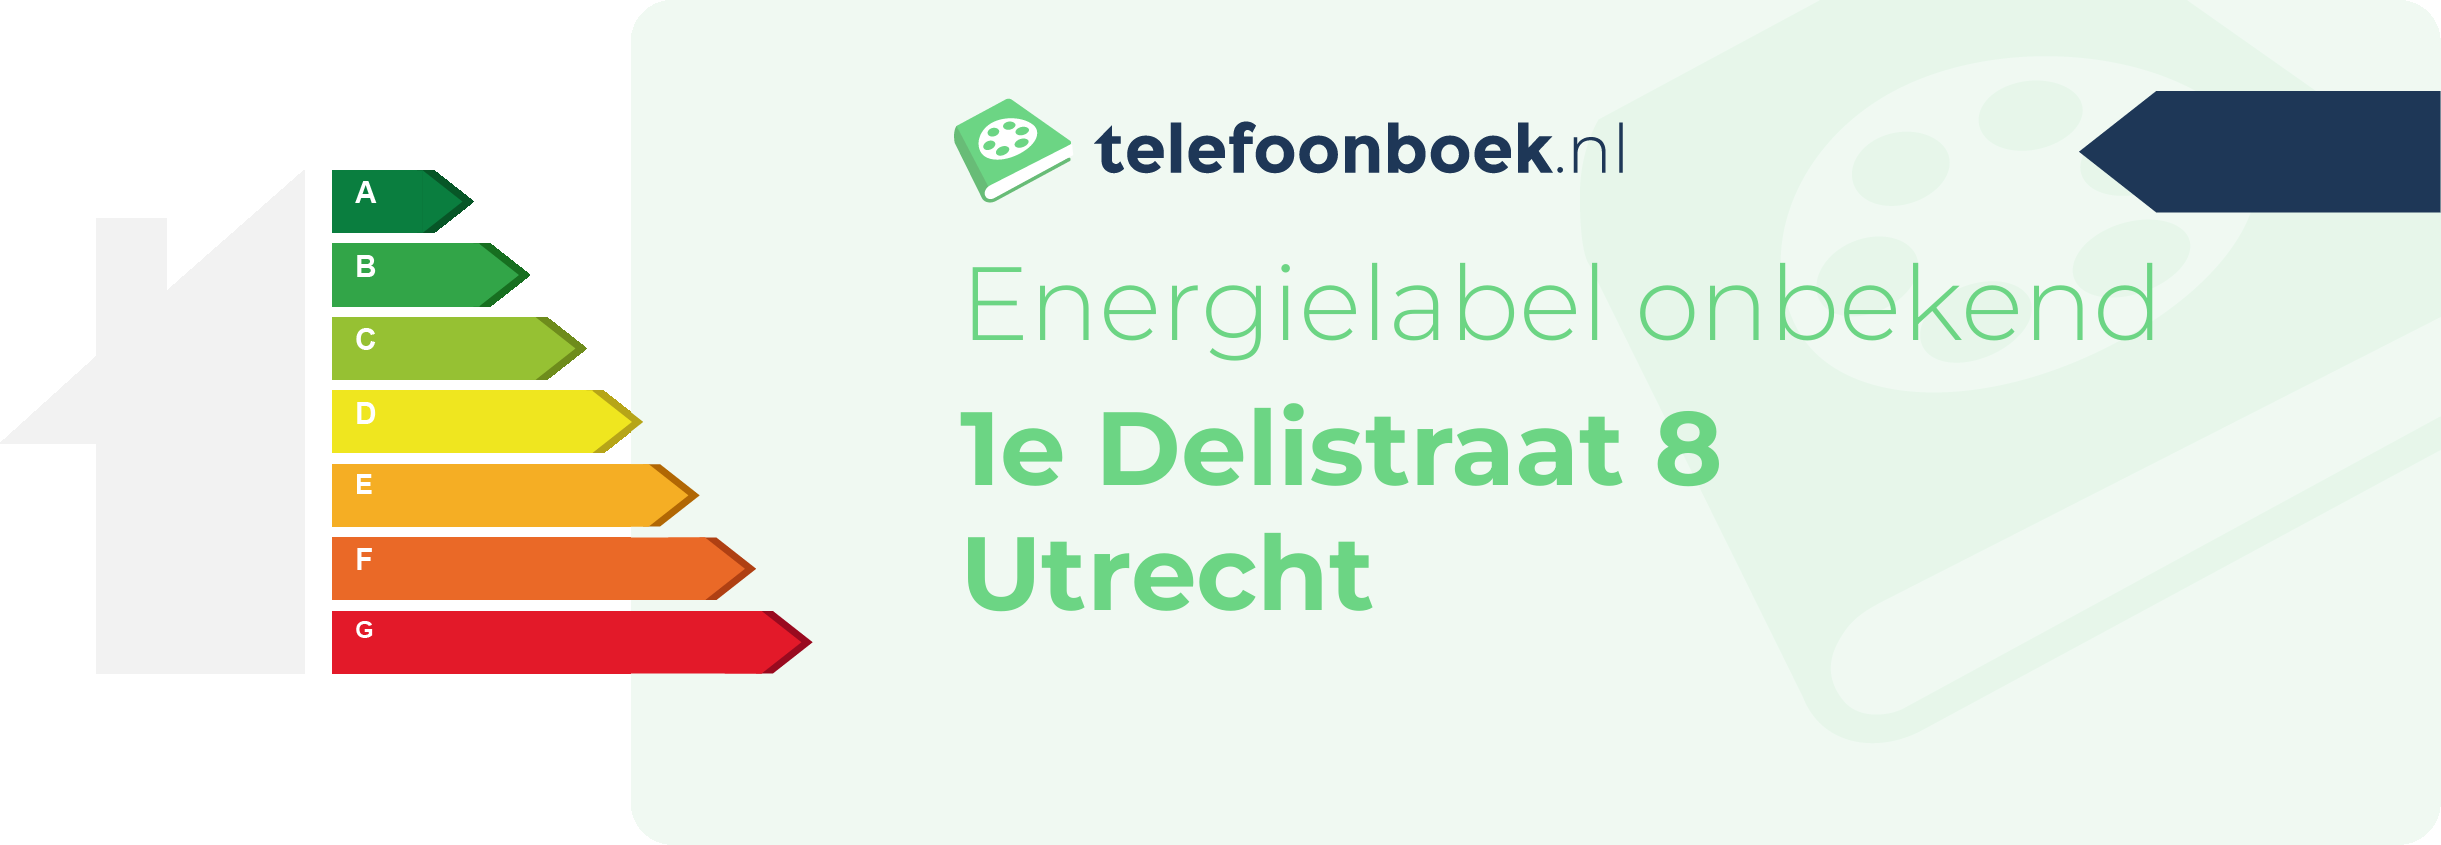 Energielabel 1e Delistraat 8 Utrecht